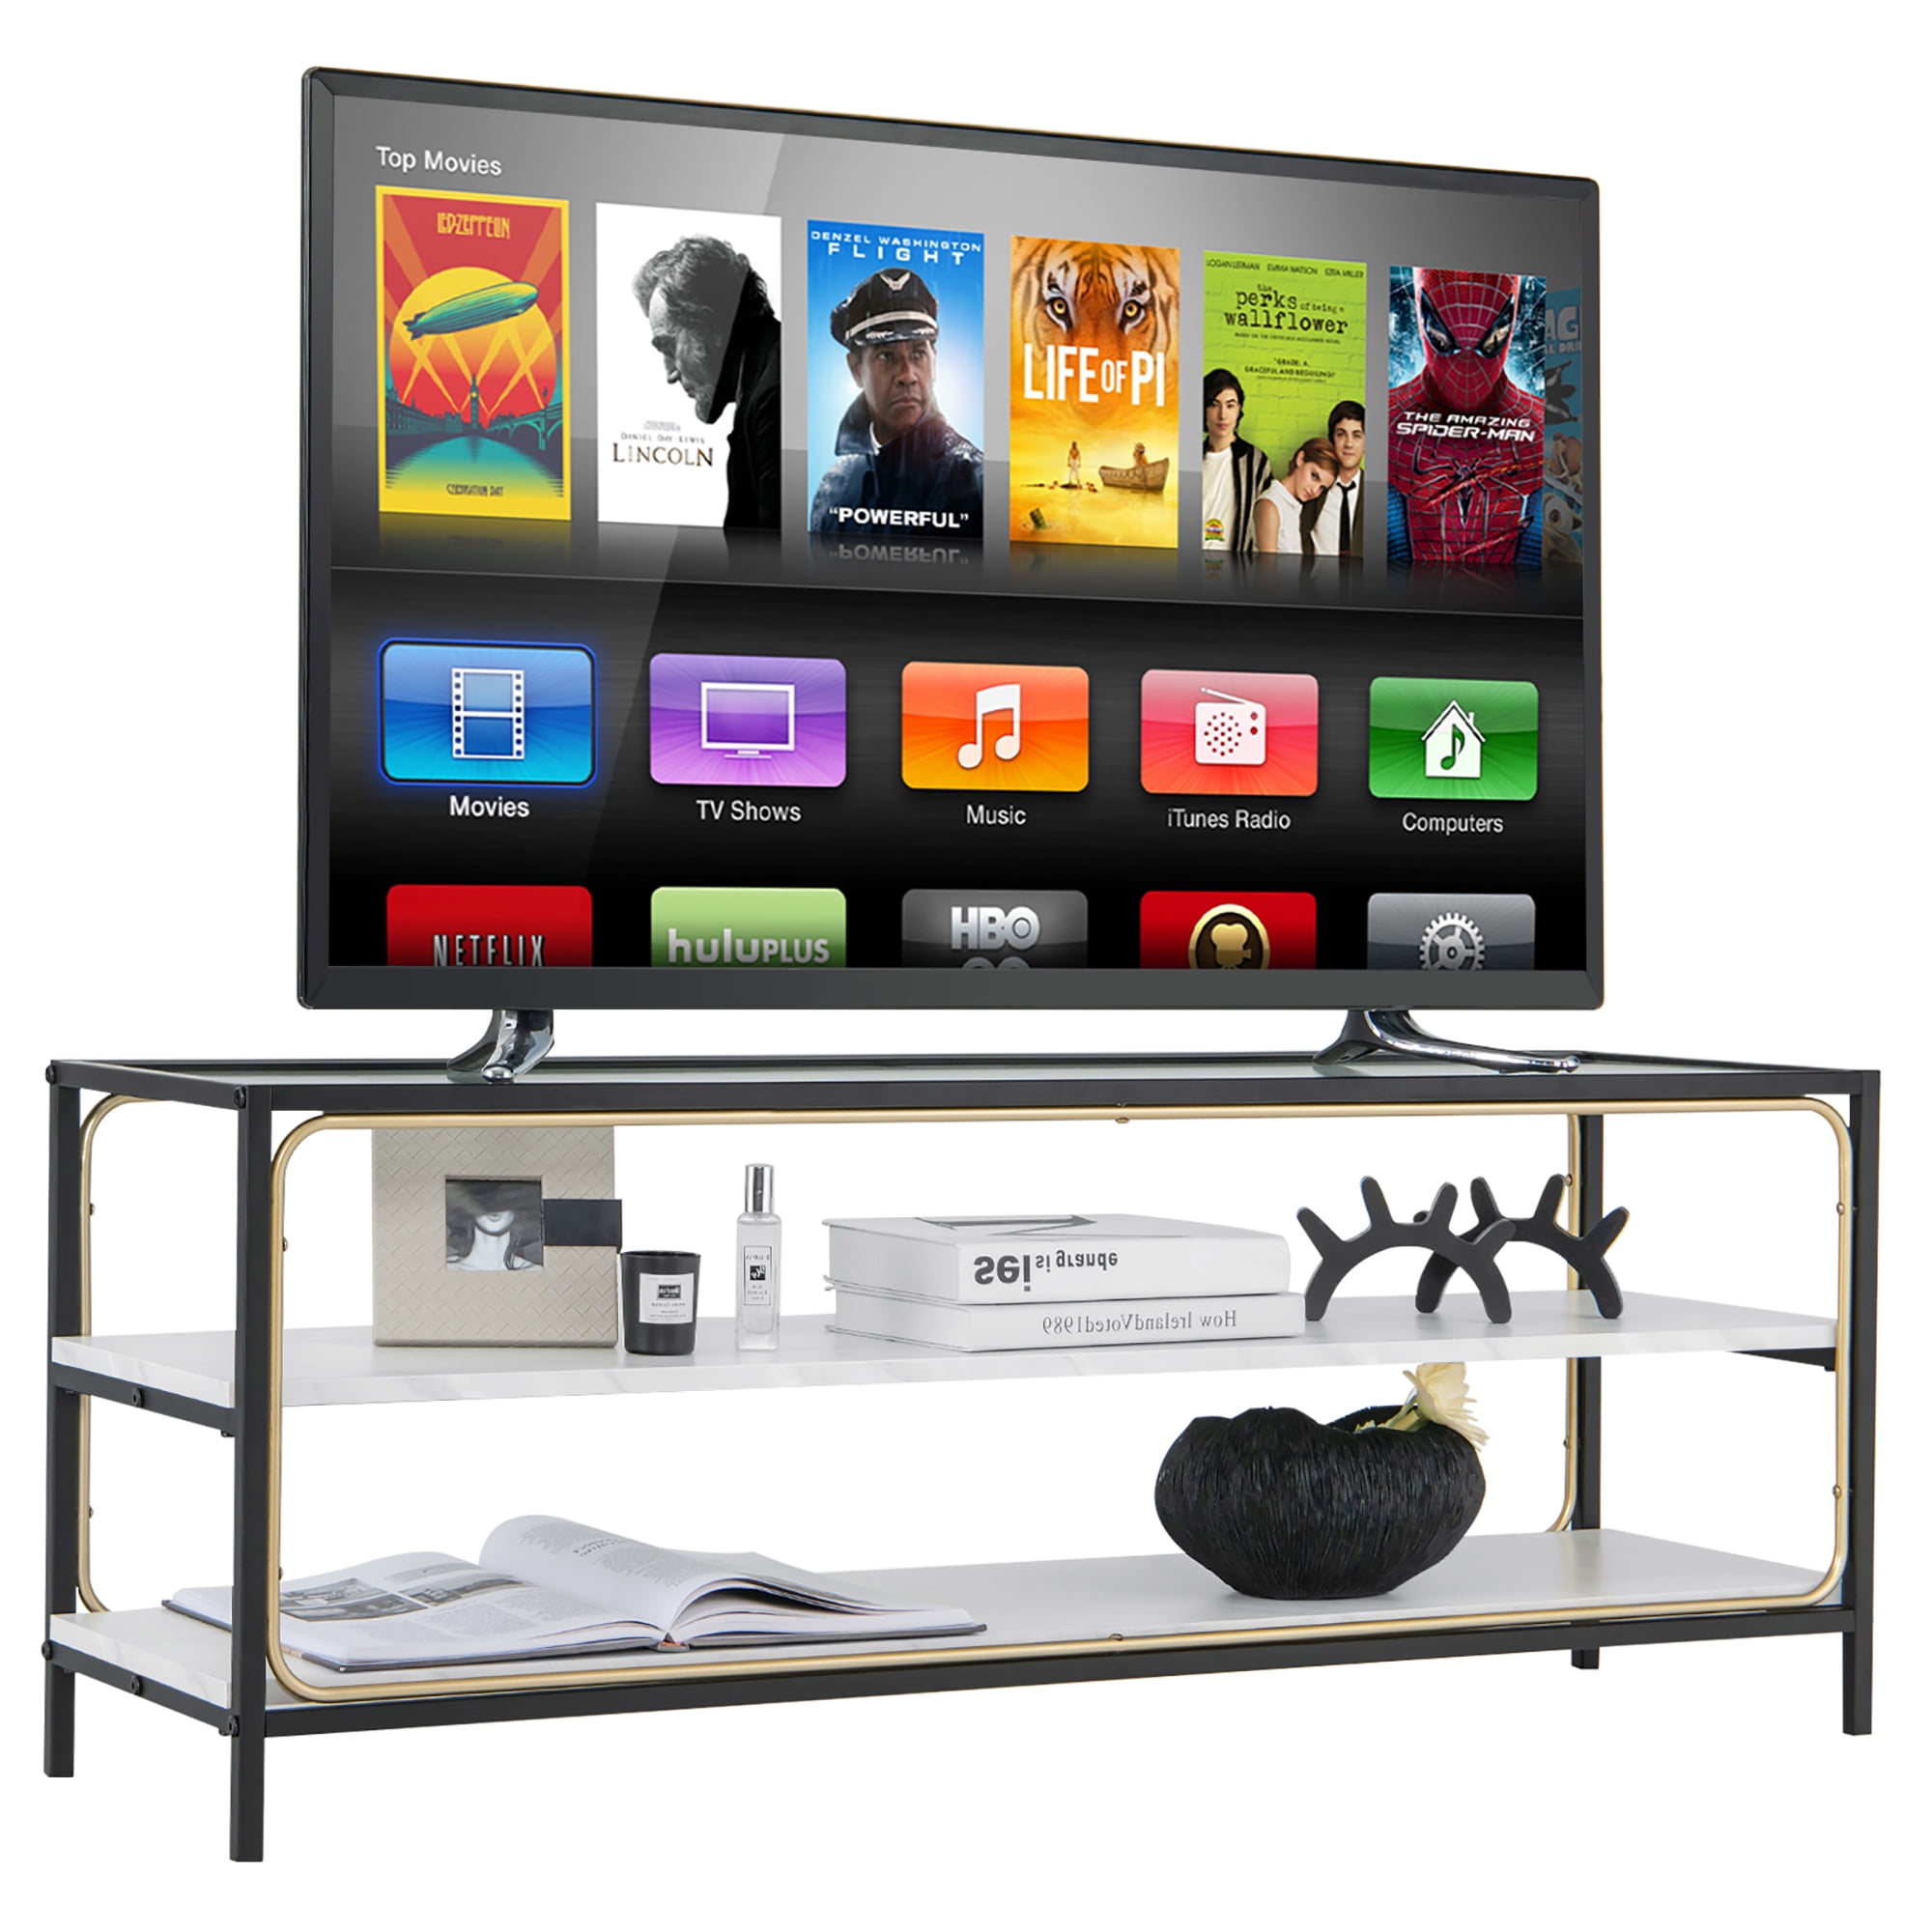 Mueble TV con estantería M16-804 nogal blanco 180x48.6x35 - 8681875460872